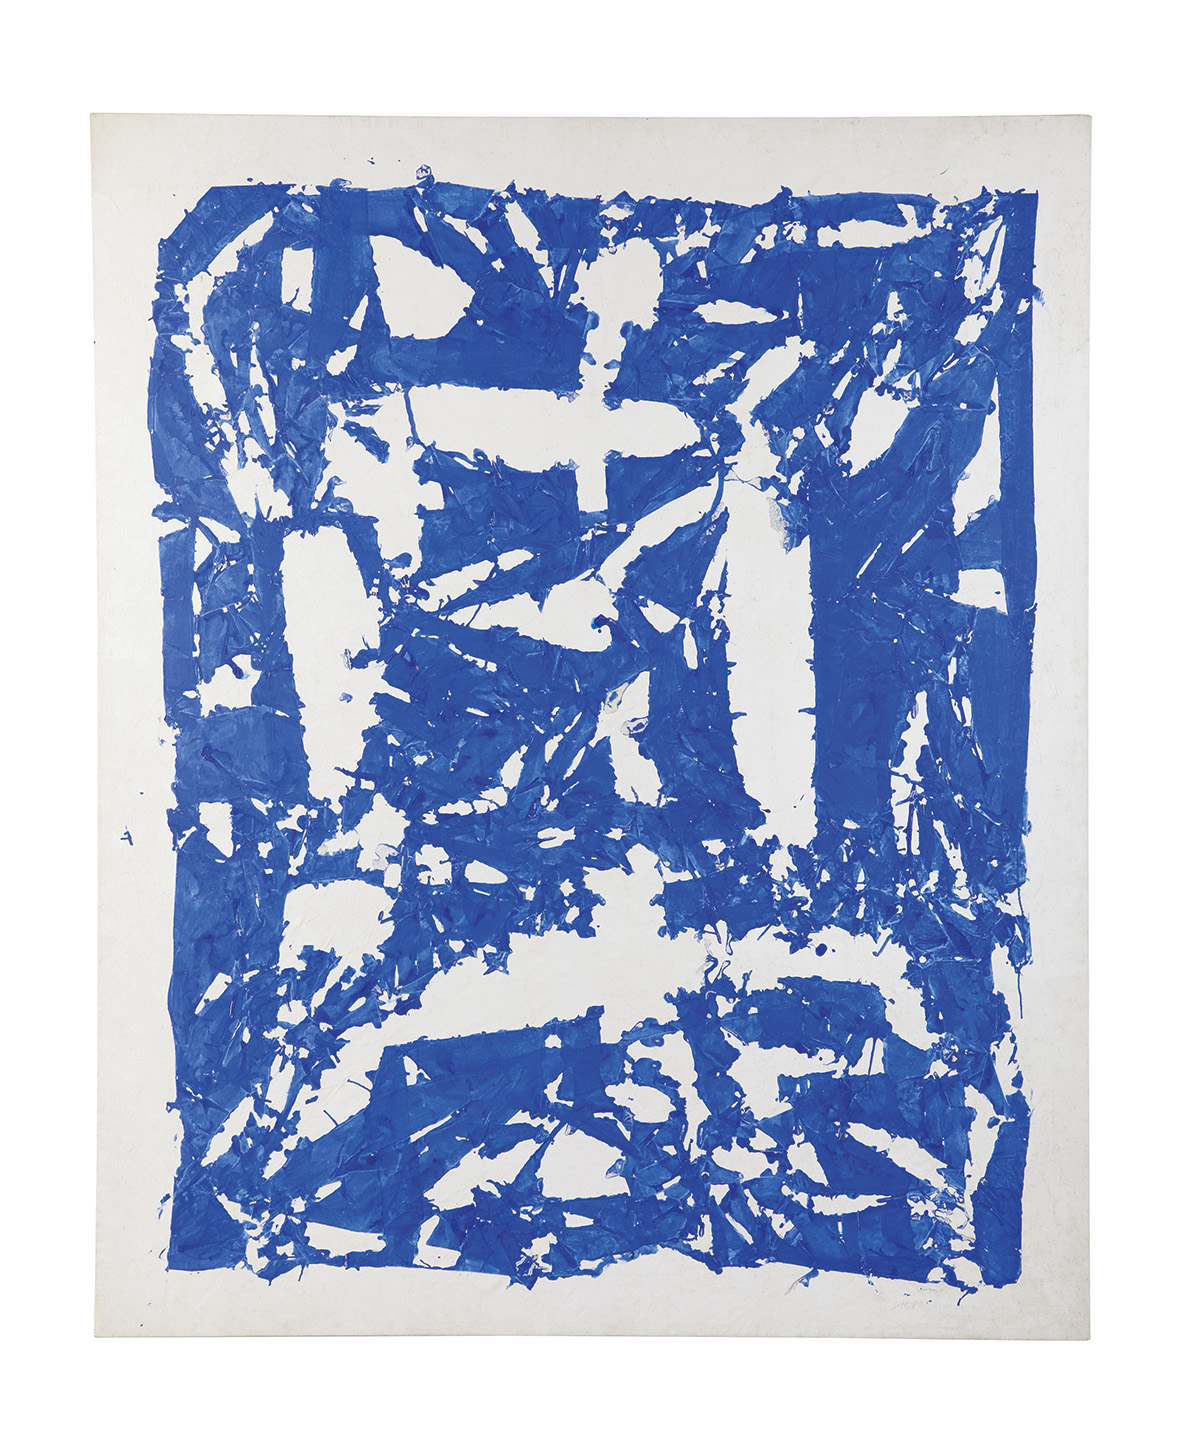 Simon HANTAÏ « Tabula » bleu - 1981, Acrylique sur toile - 235 x 191 cm - Collection FRAC Auvergne Année d'acquisition : 1985